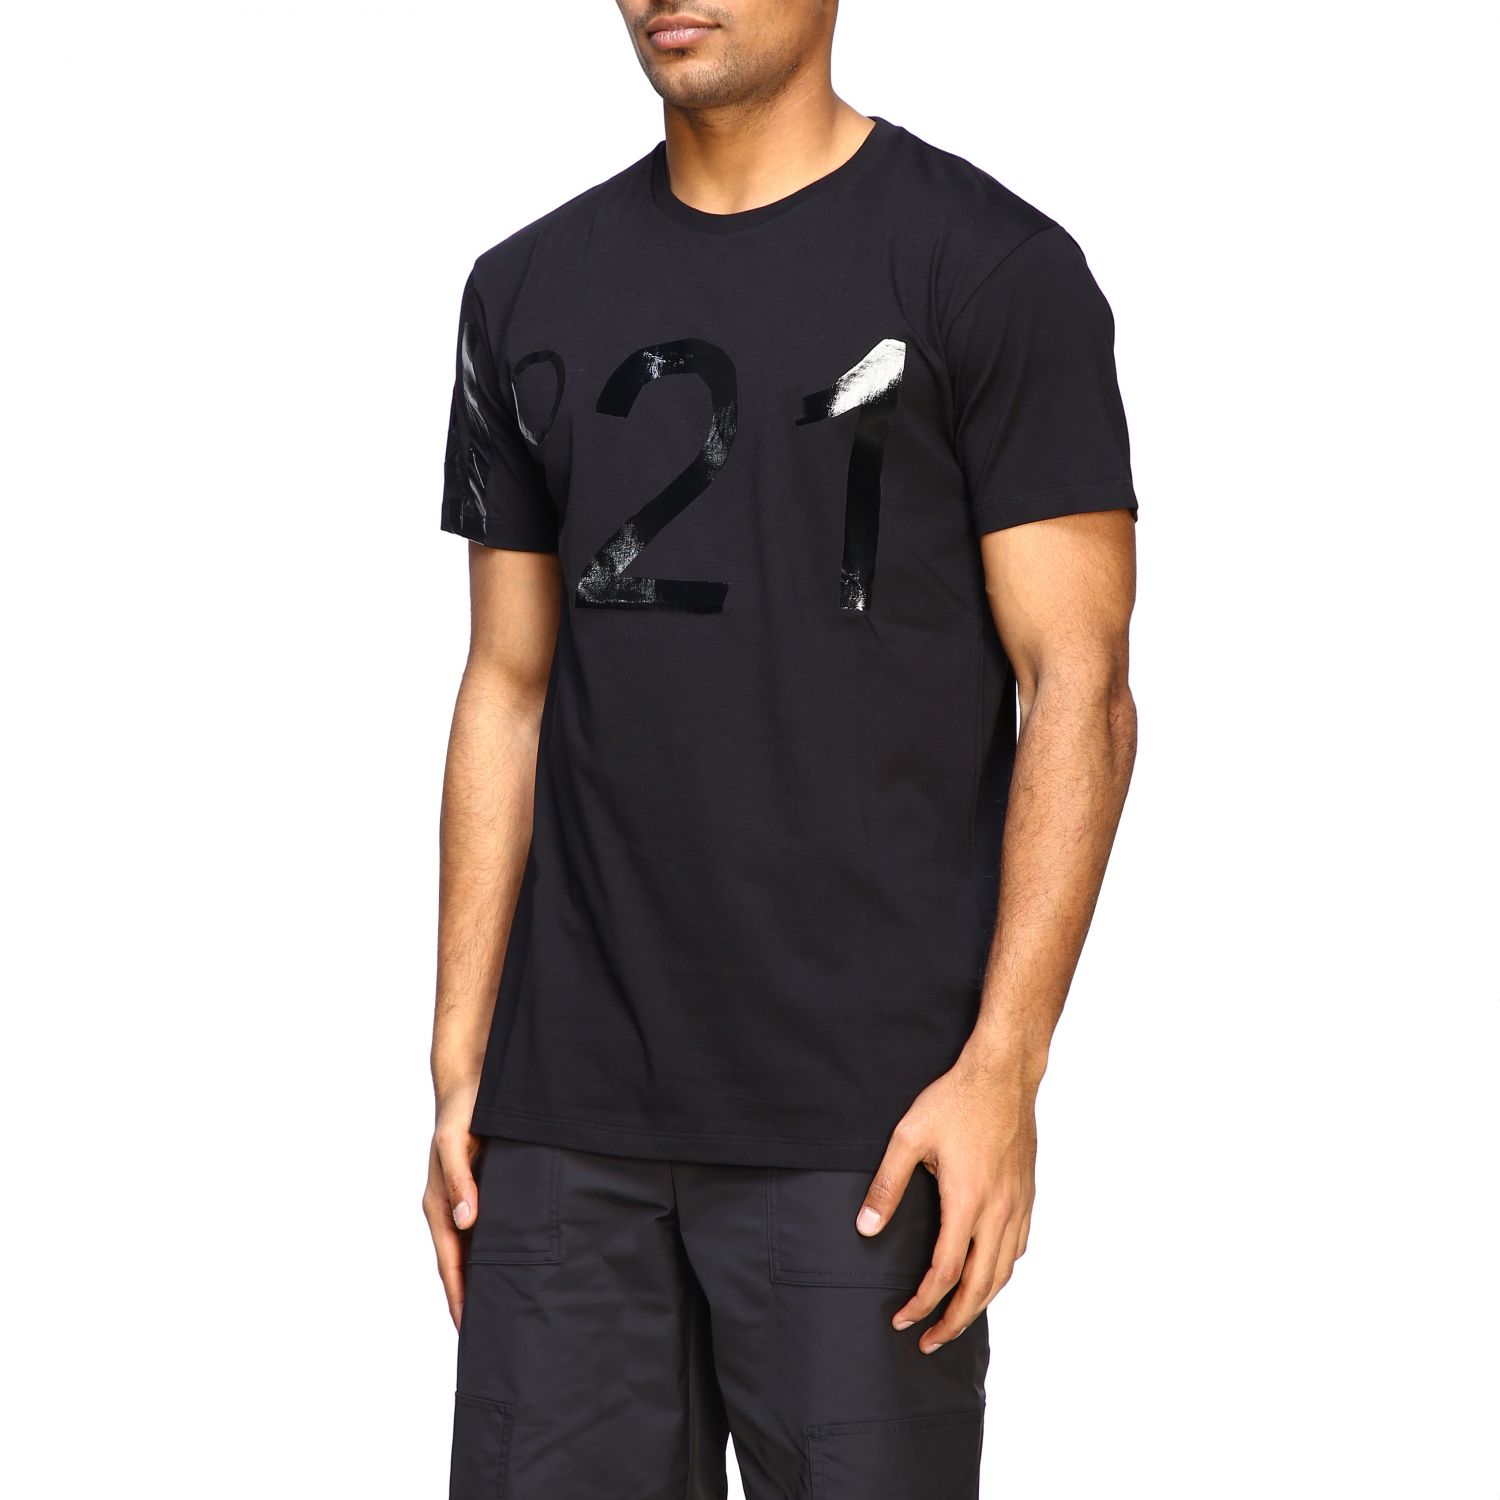 N° 21 Outlet: N ° 21 short-sleeved T-shirt with big logo - Black | T ...